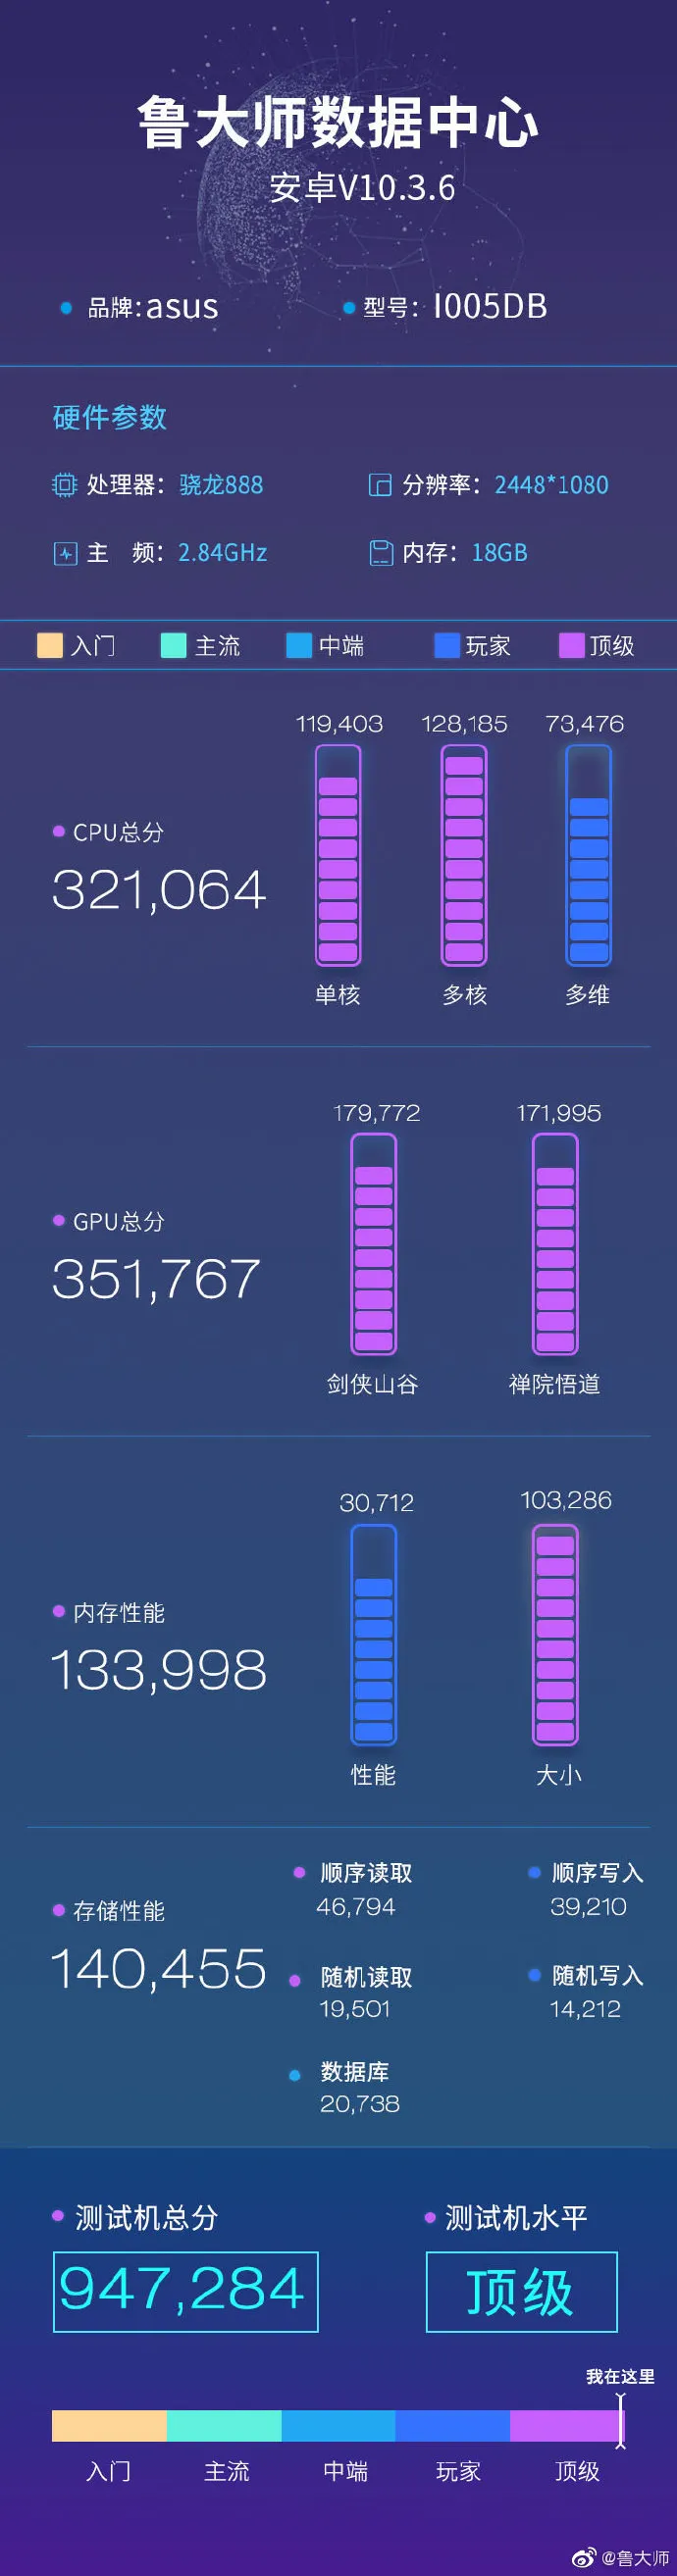 Le "18GB Rog Phone 5" sur Maître Lu. (Source : Weibo)